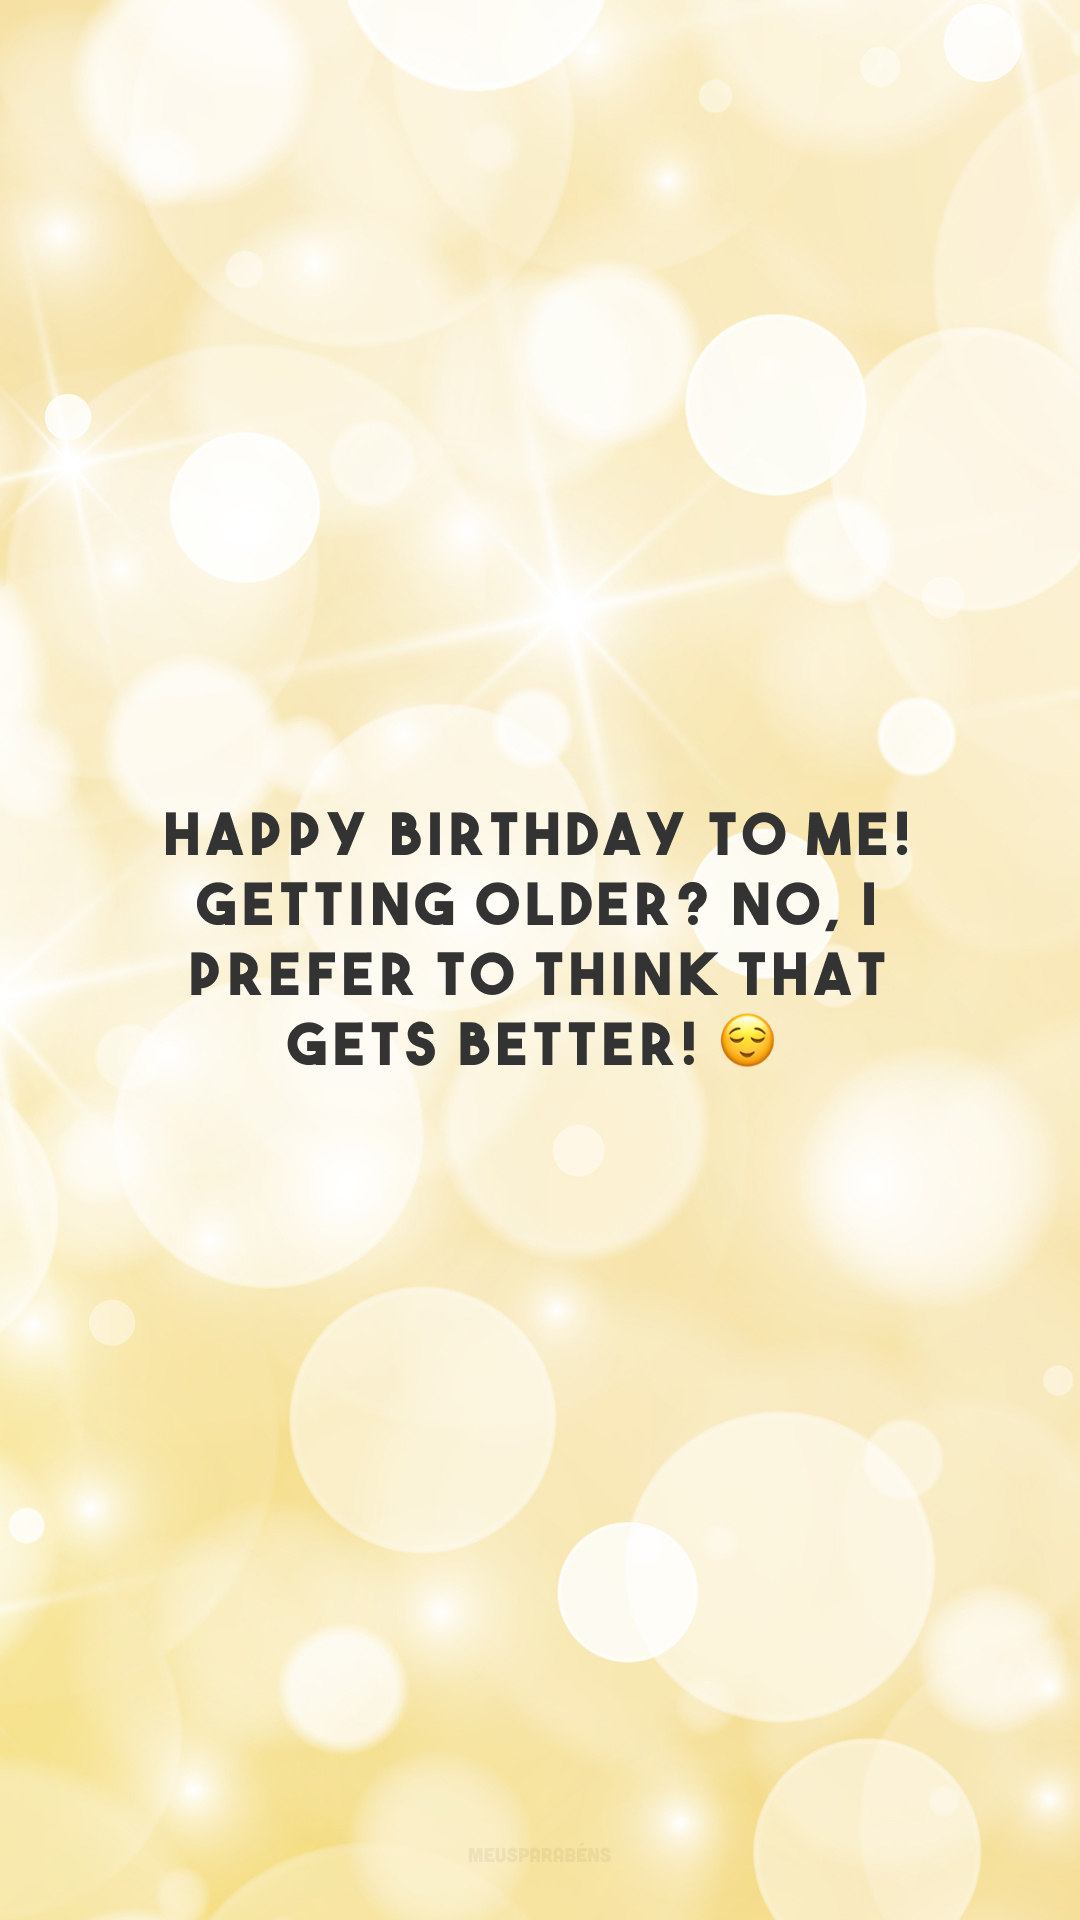 Happy birthday to me! Getting older? No, I prefer to think that gets better! 😌

<p>(Feliz aniversário pra mim! Ficando mais velho? Não, prefiro pensar que estou ficando melhor! )<p>